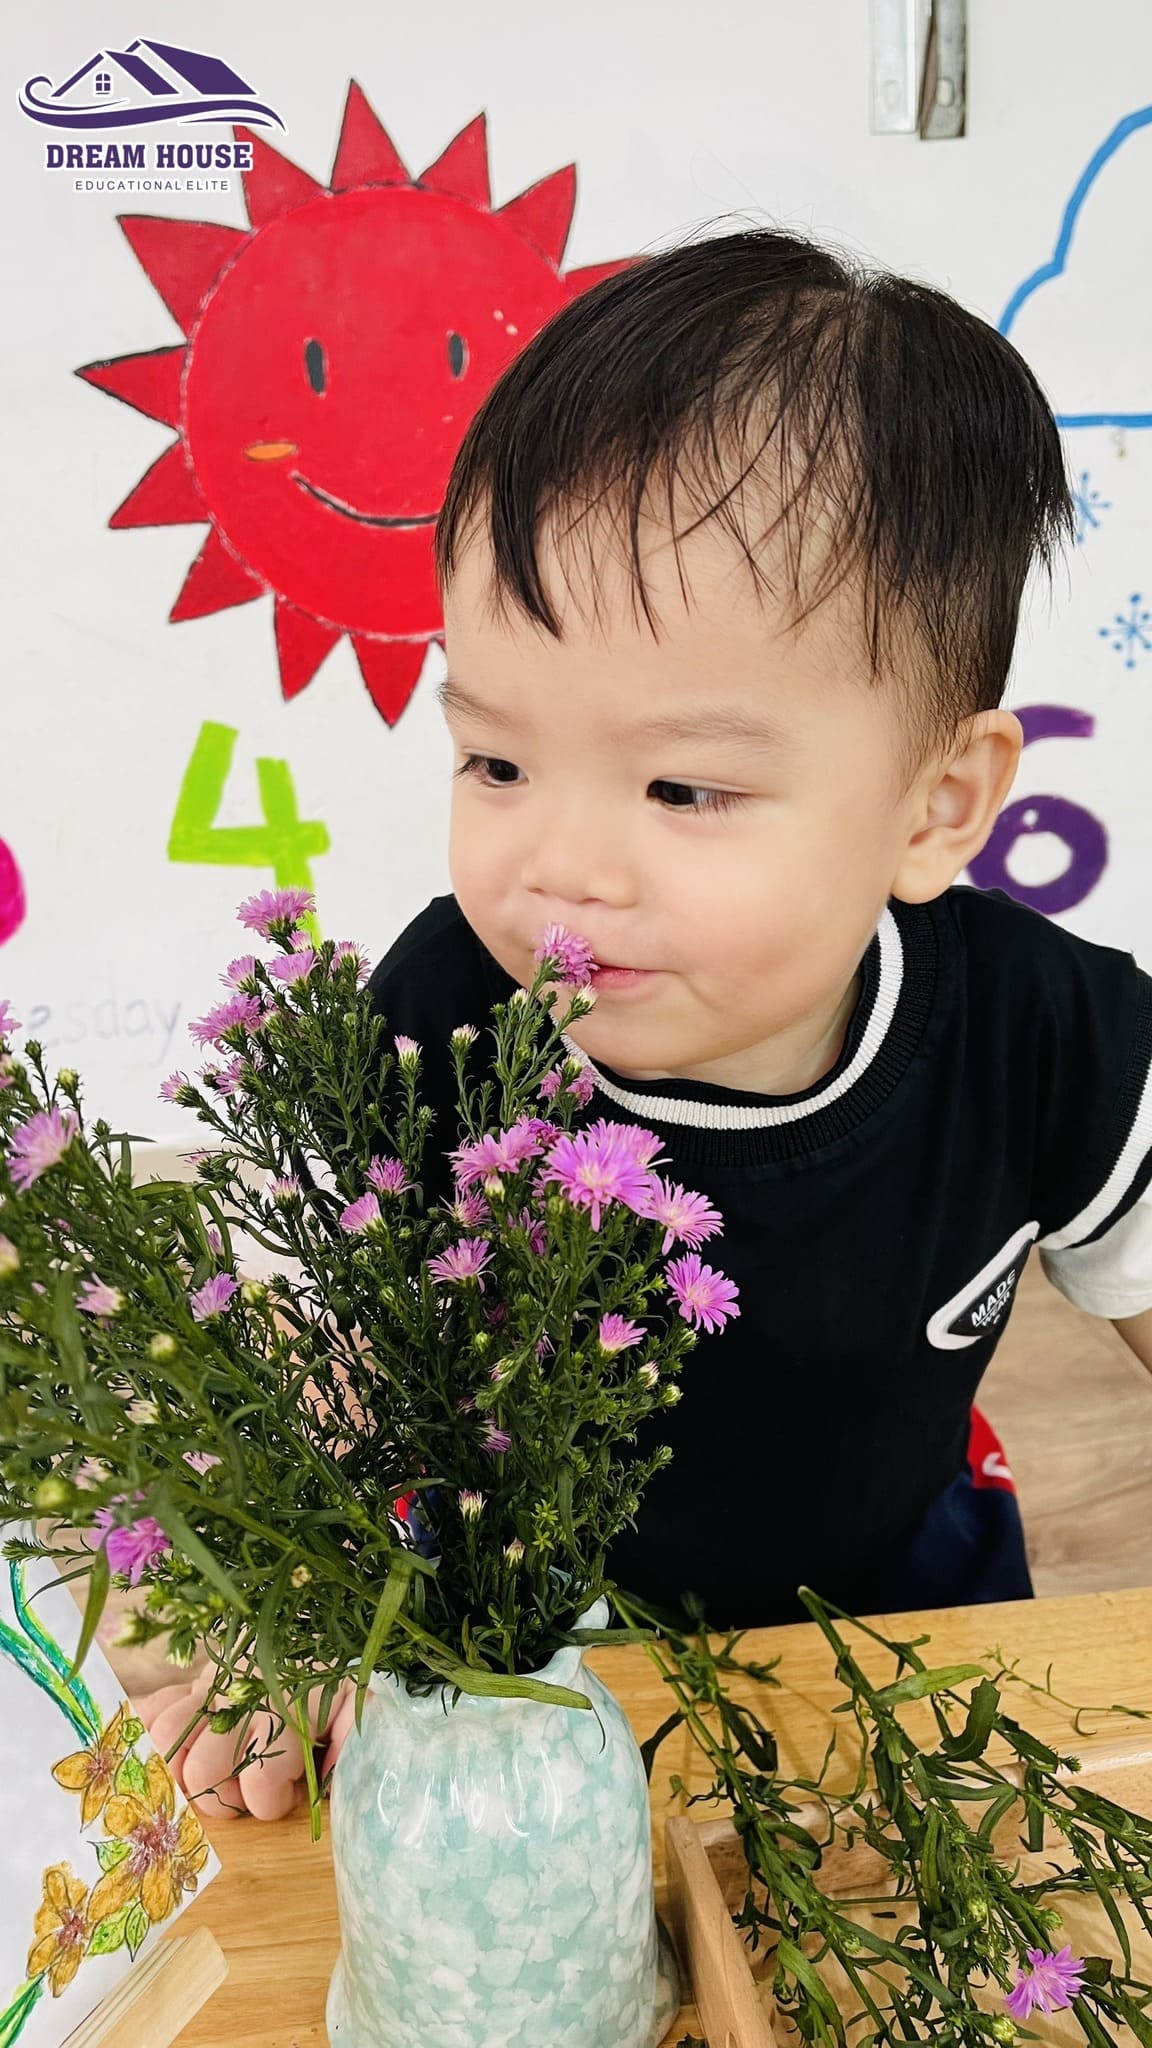 Hoạt Động Cắm Hoa Sự Khéo Léo Của Đôi Tay Xinh - Trường Mầm Non Ngôi Nhà Mơ Ước